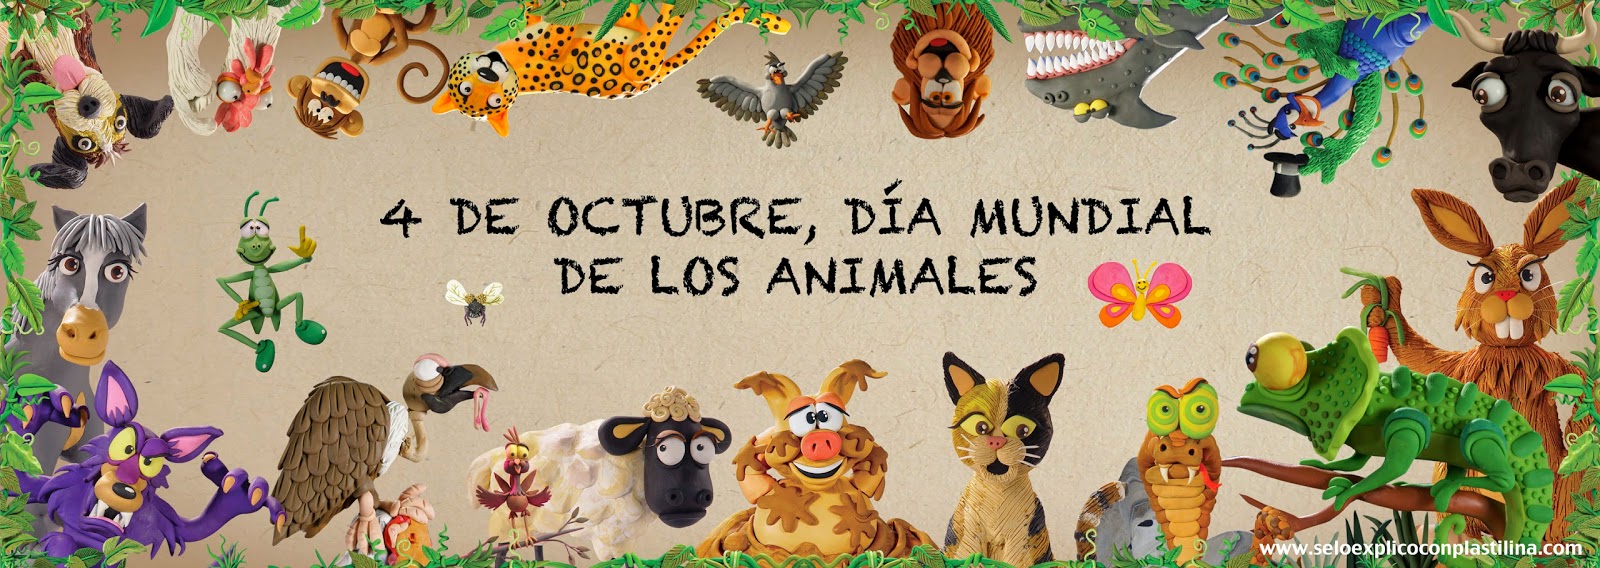  Día mundial de los animales.